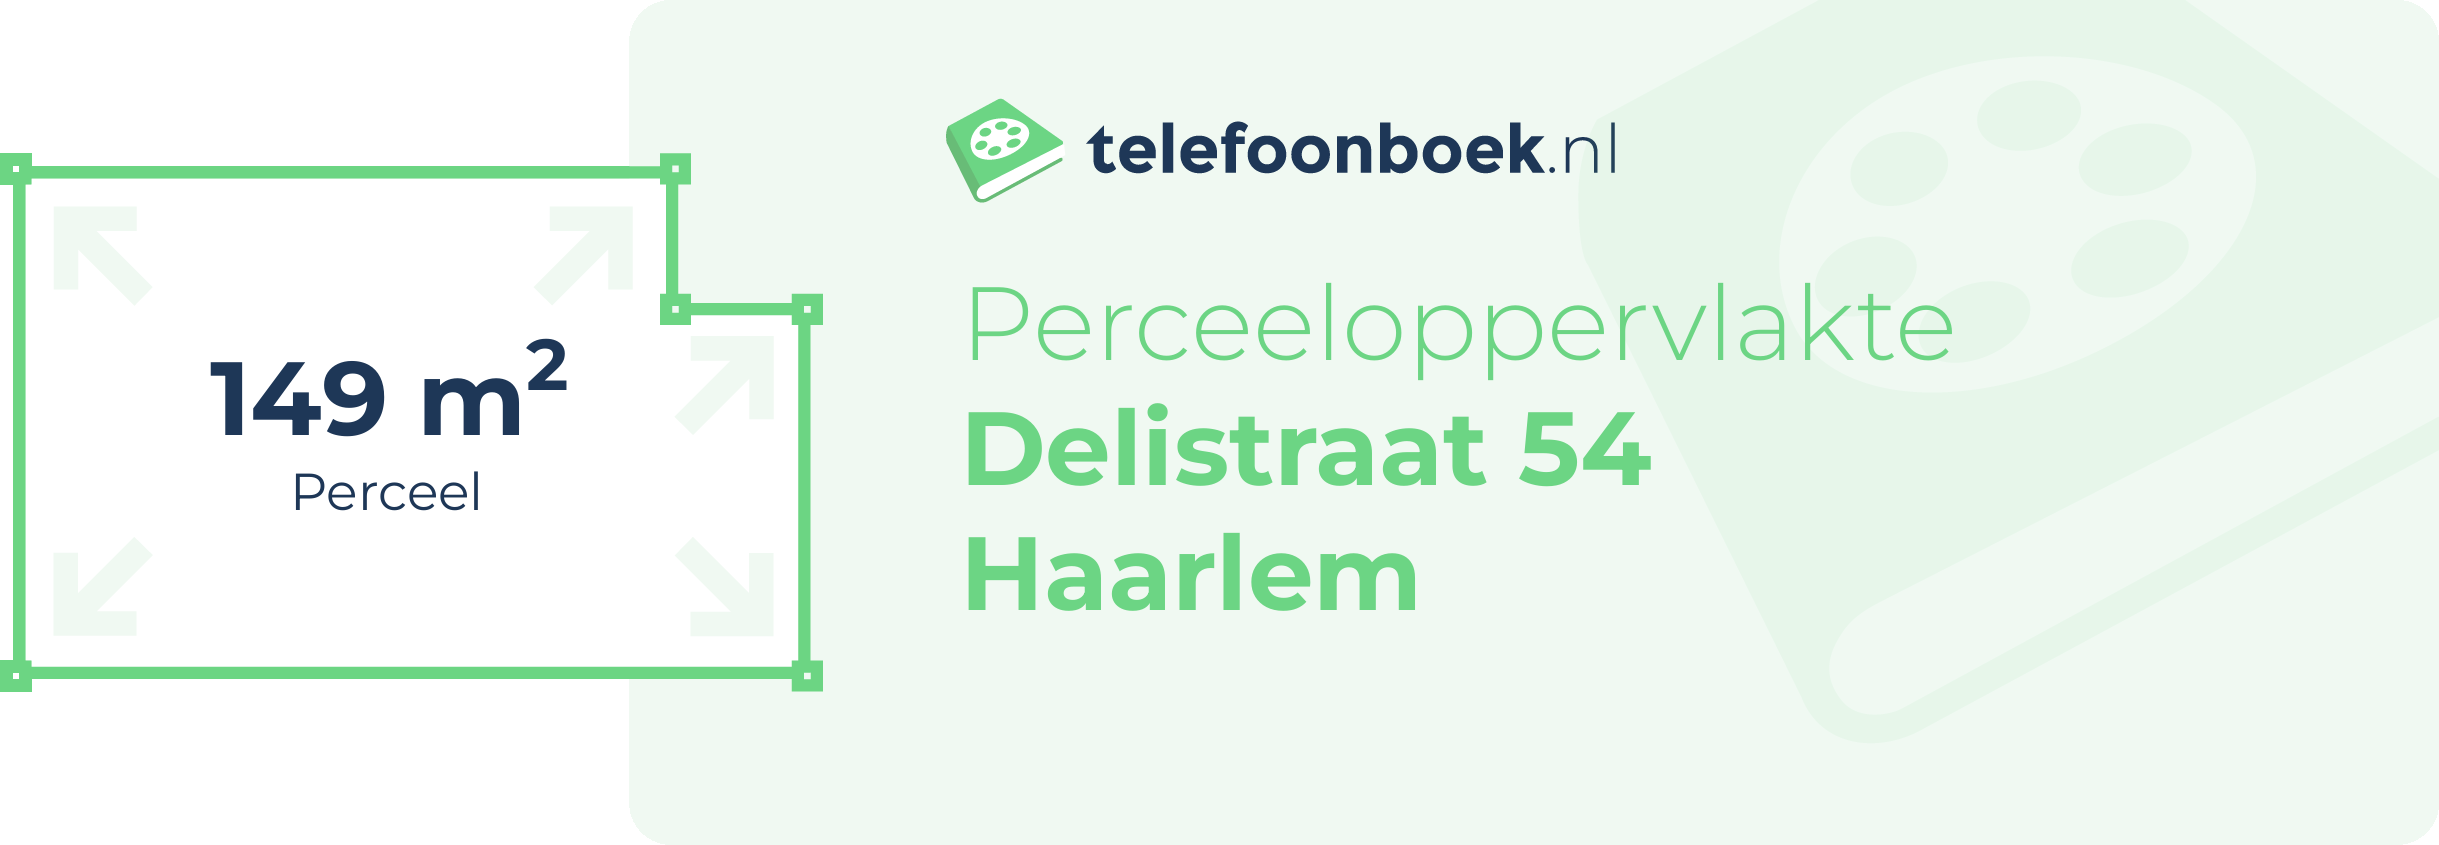 Perceeloppervlakte Delistraat 54 Haarlem